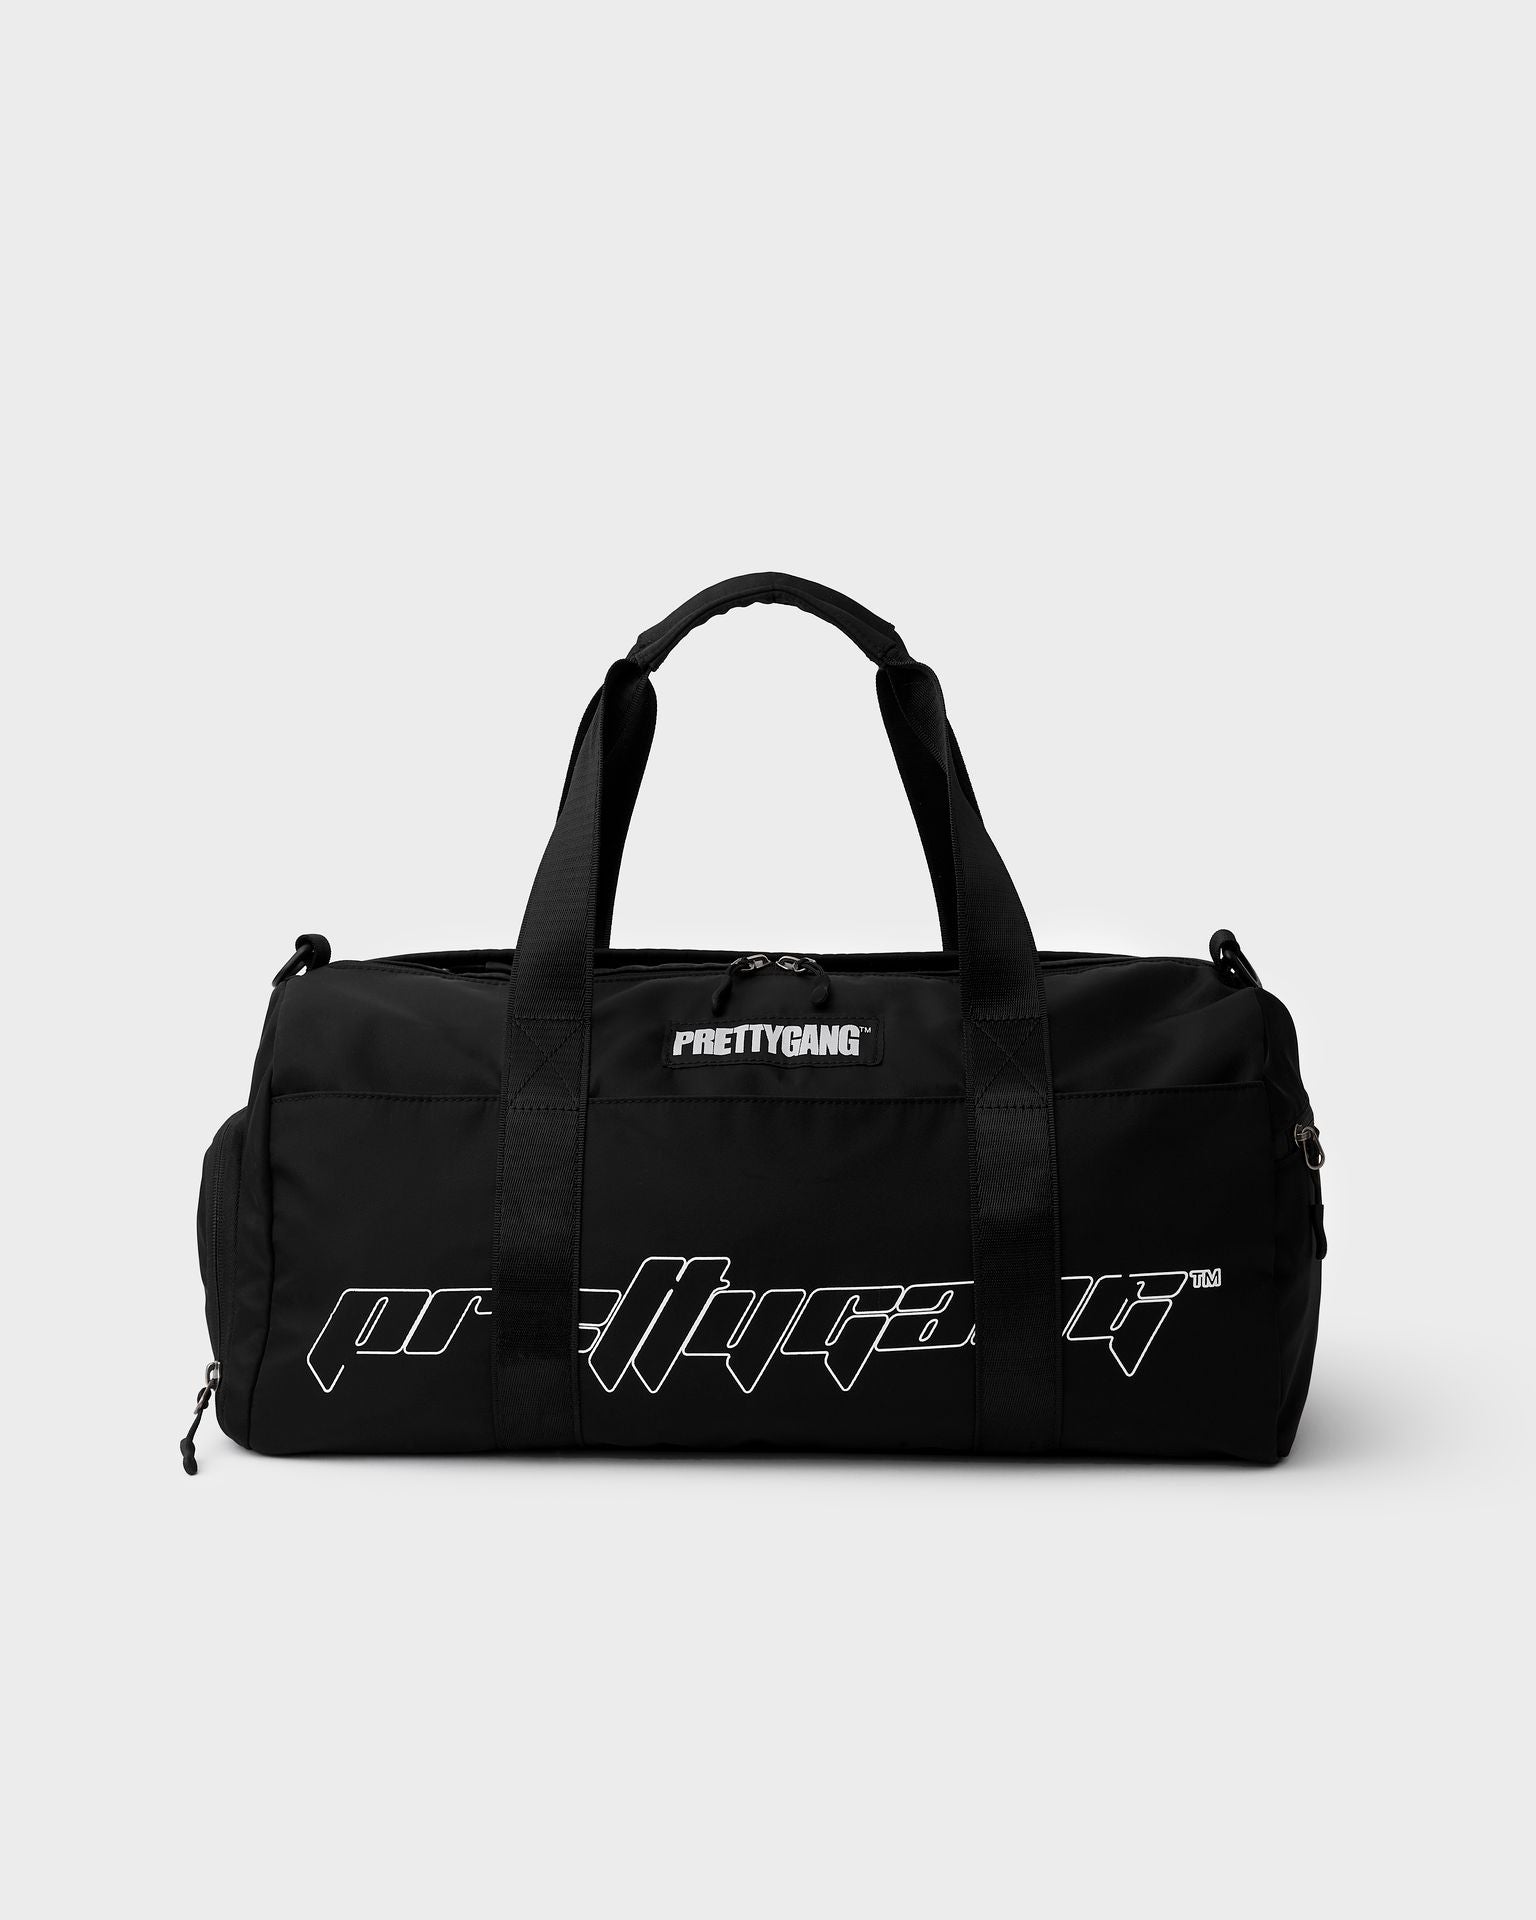 Duffle Bag - prettygangofficial.com